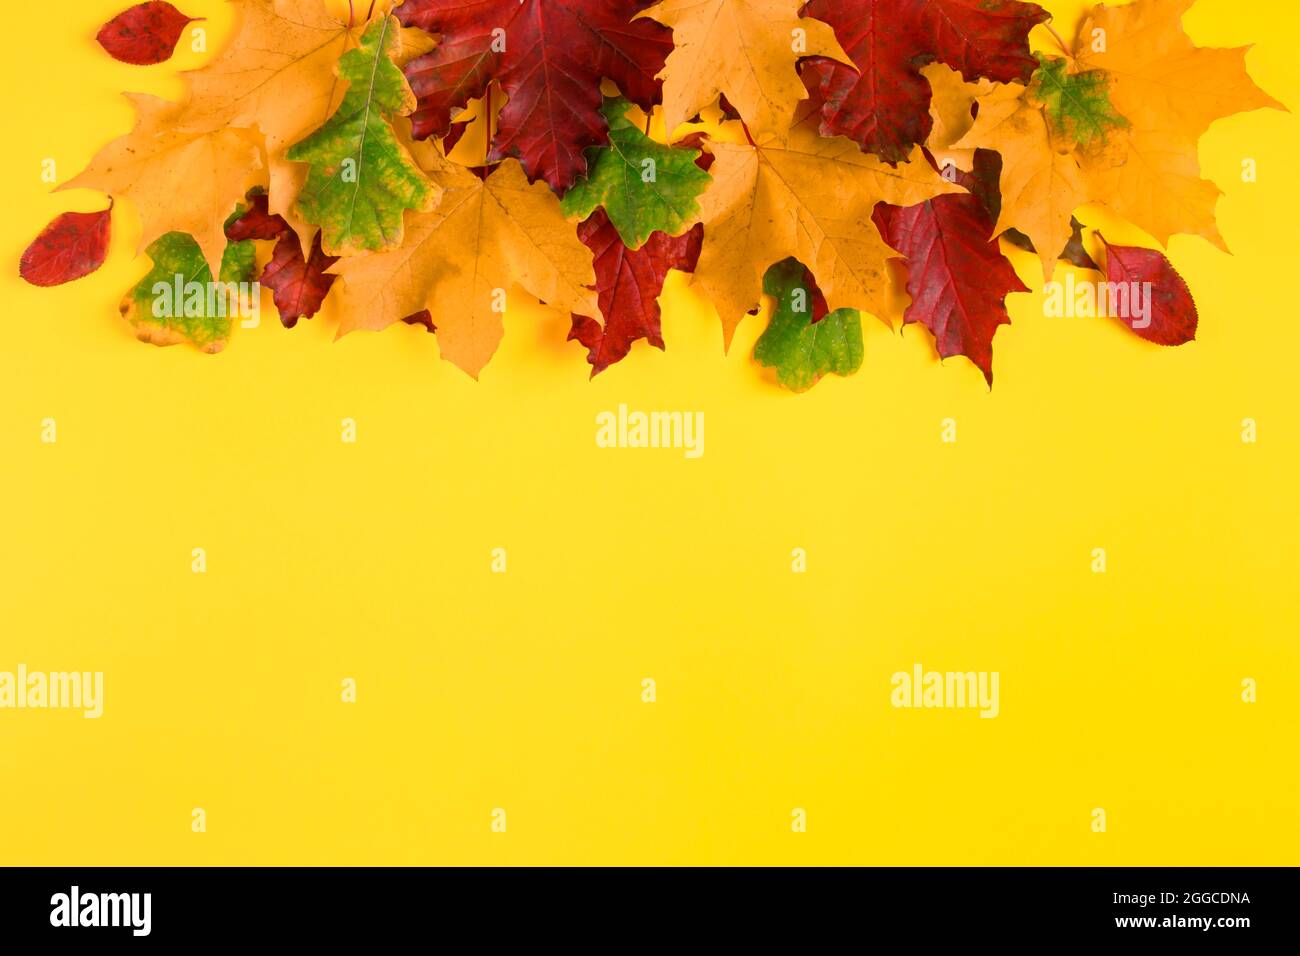 Cadre de feuilles d'érable d'automne tombées sur un fond jaune vif. Feuillage d'automne coloré. Toile de fond pour le design. Copier l'espace. Banque D'Images